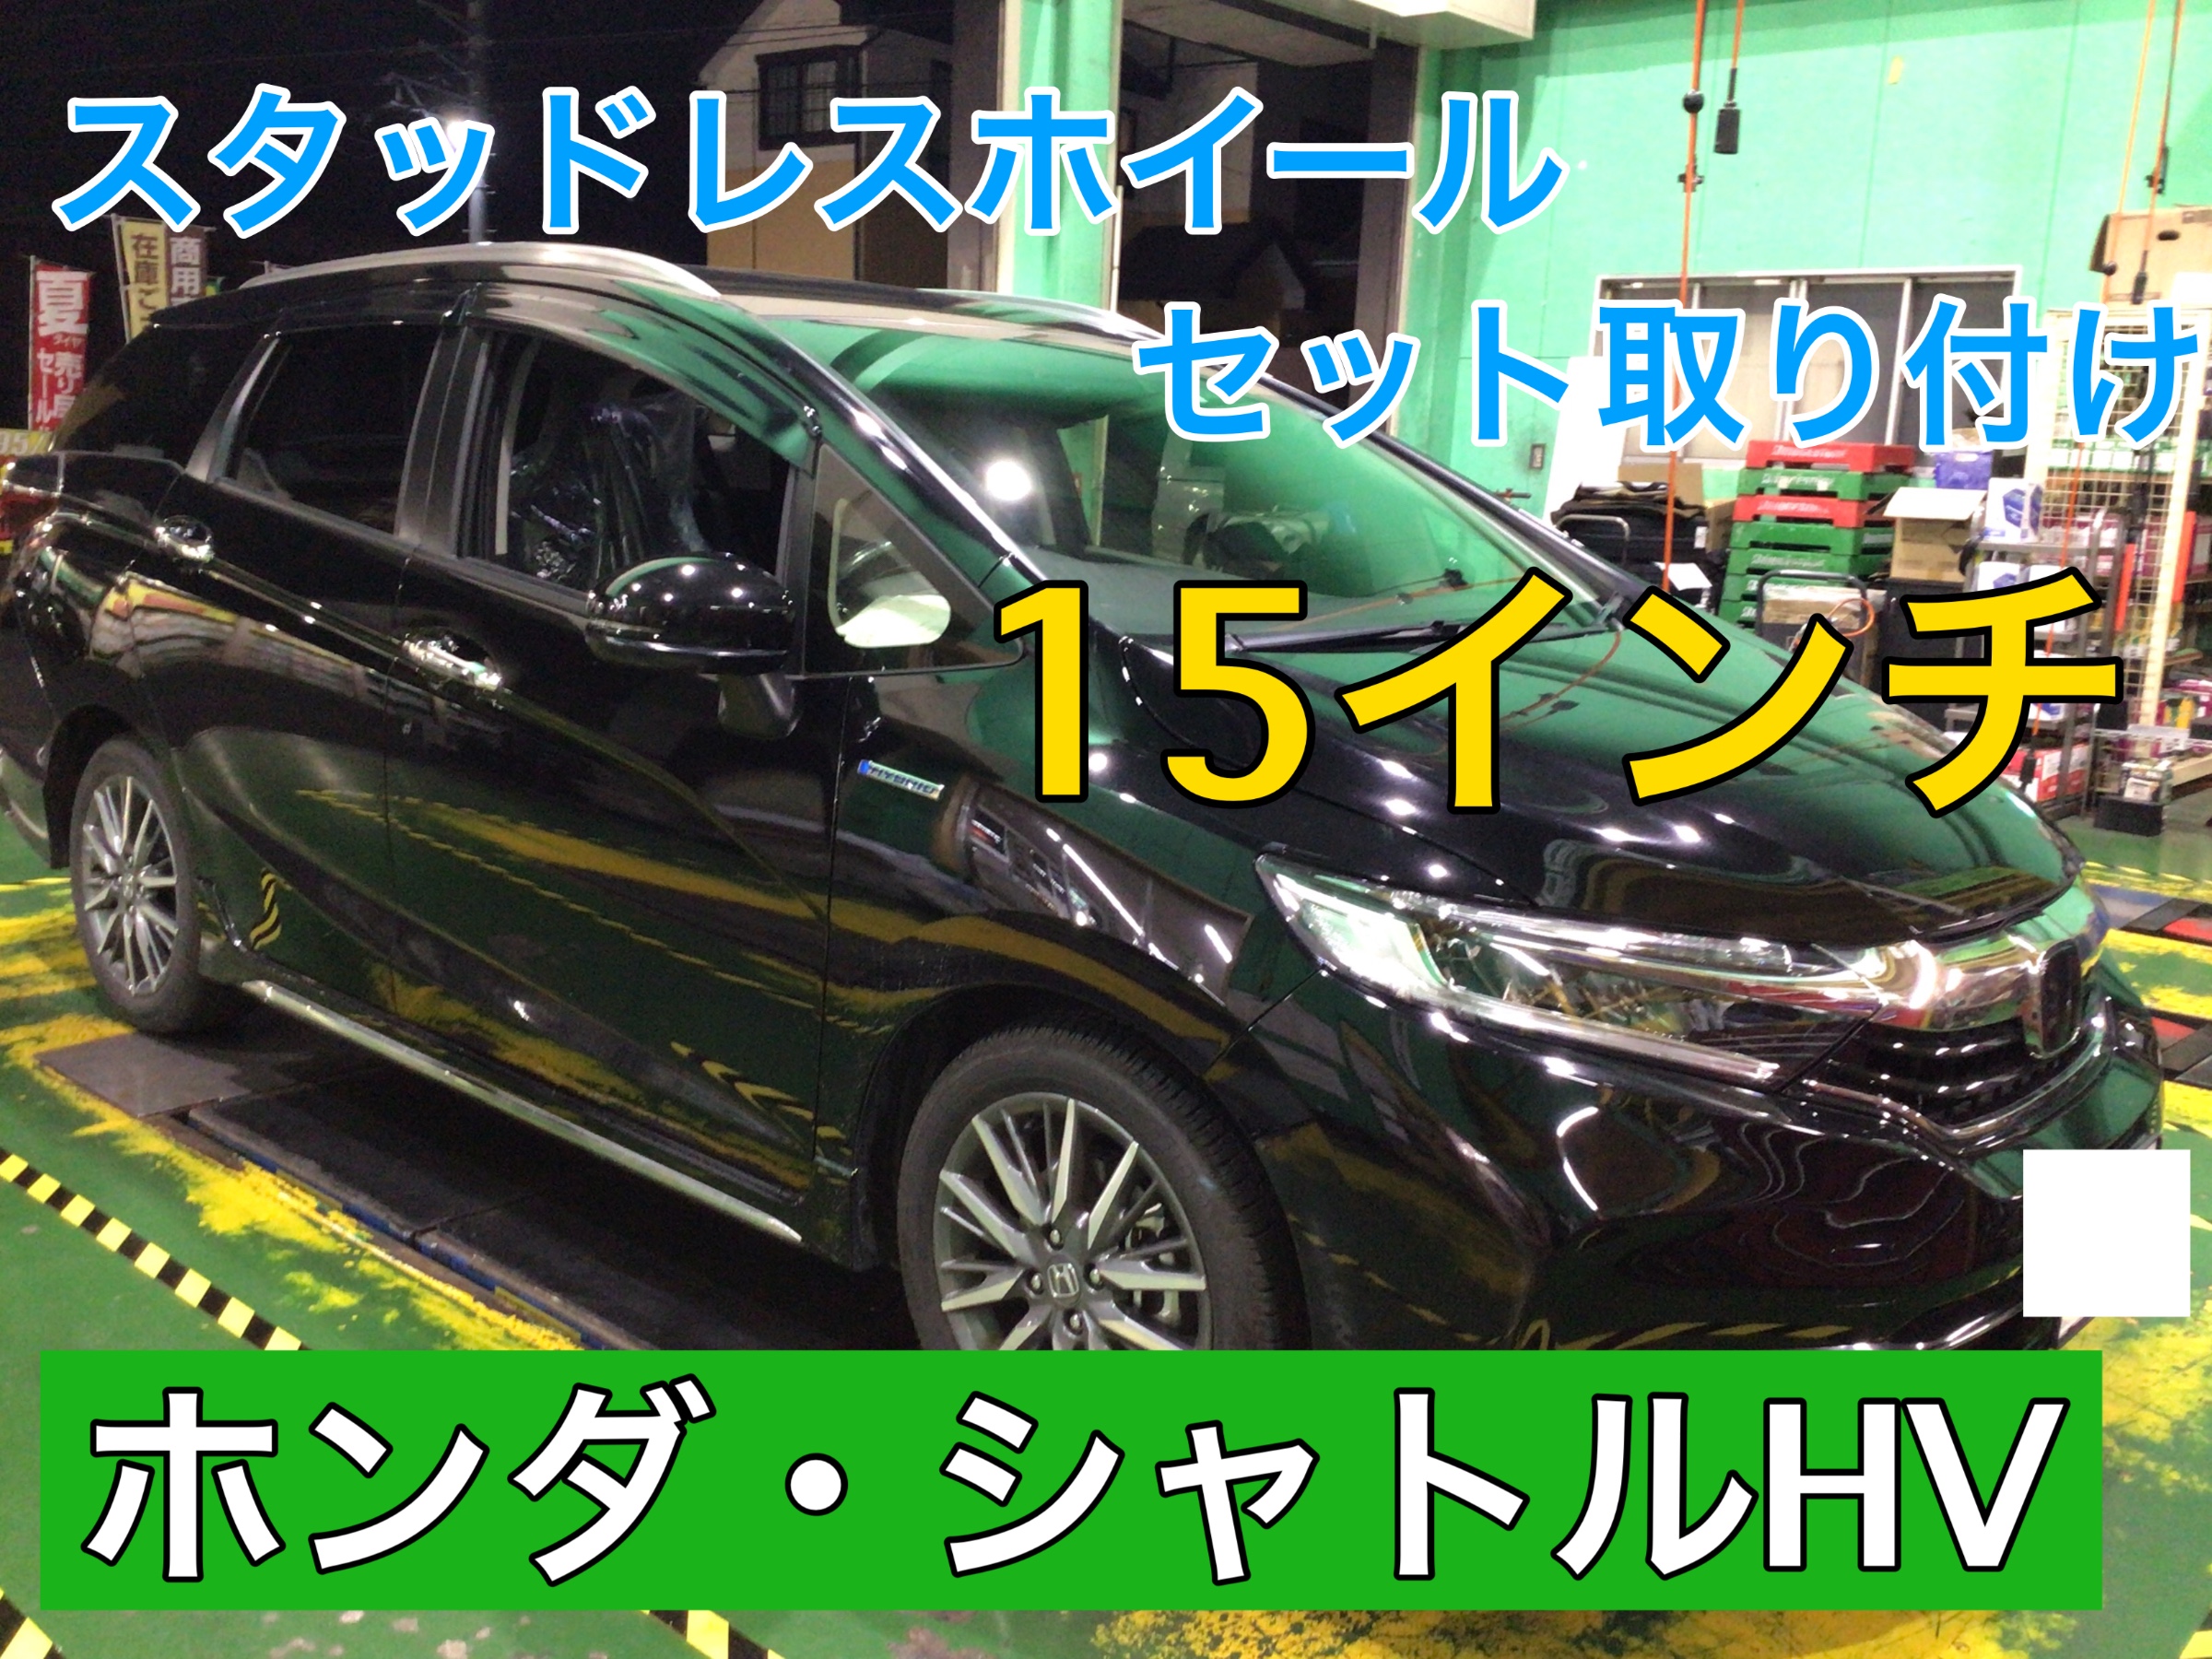 【165/60R15】 新品輸入タイヤ 15インチ スタッドレスタイヤ 送料無料